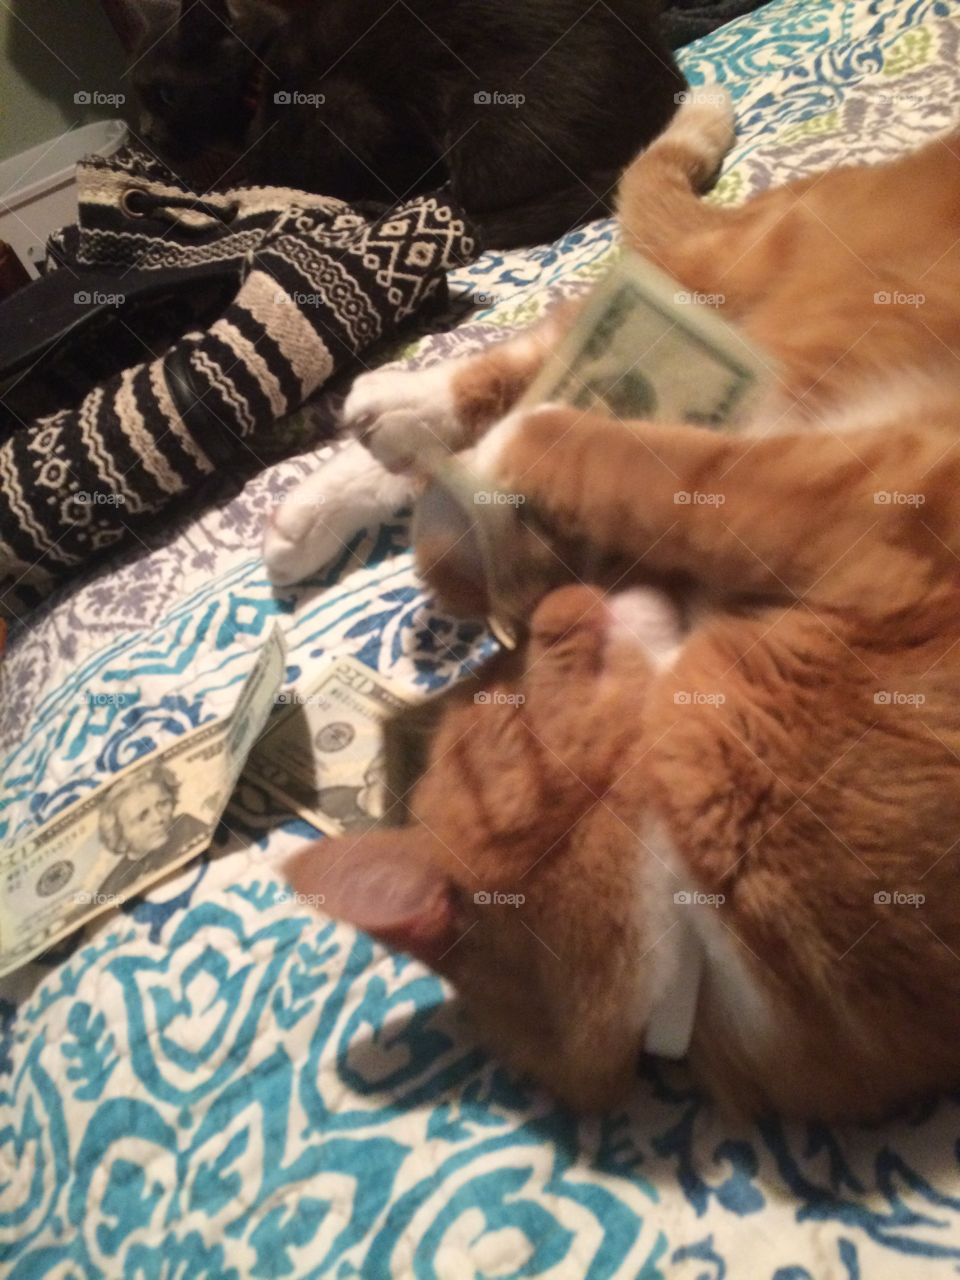 Morris stole the money 